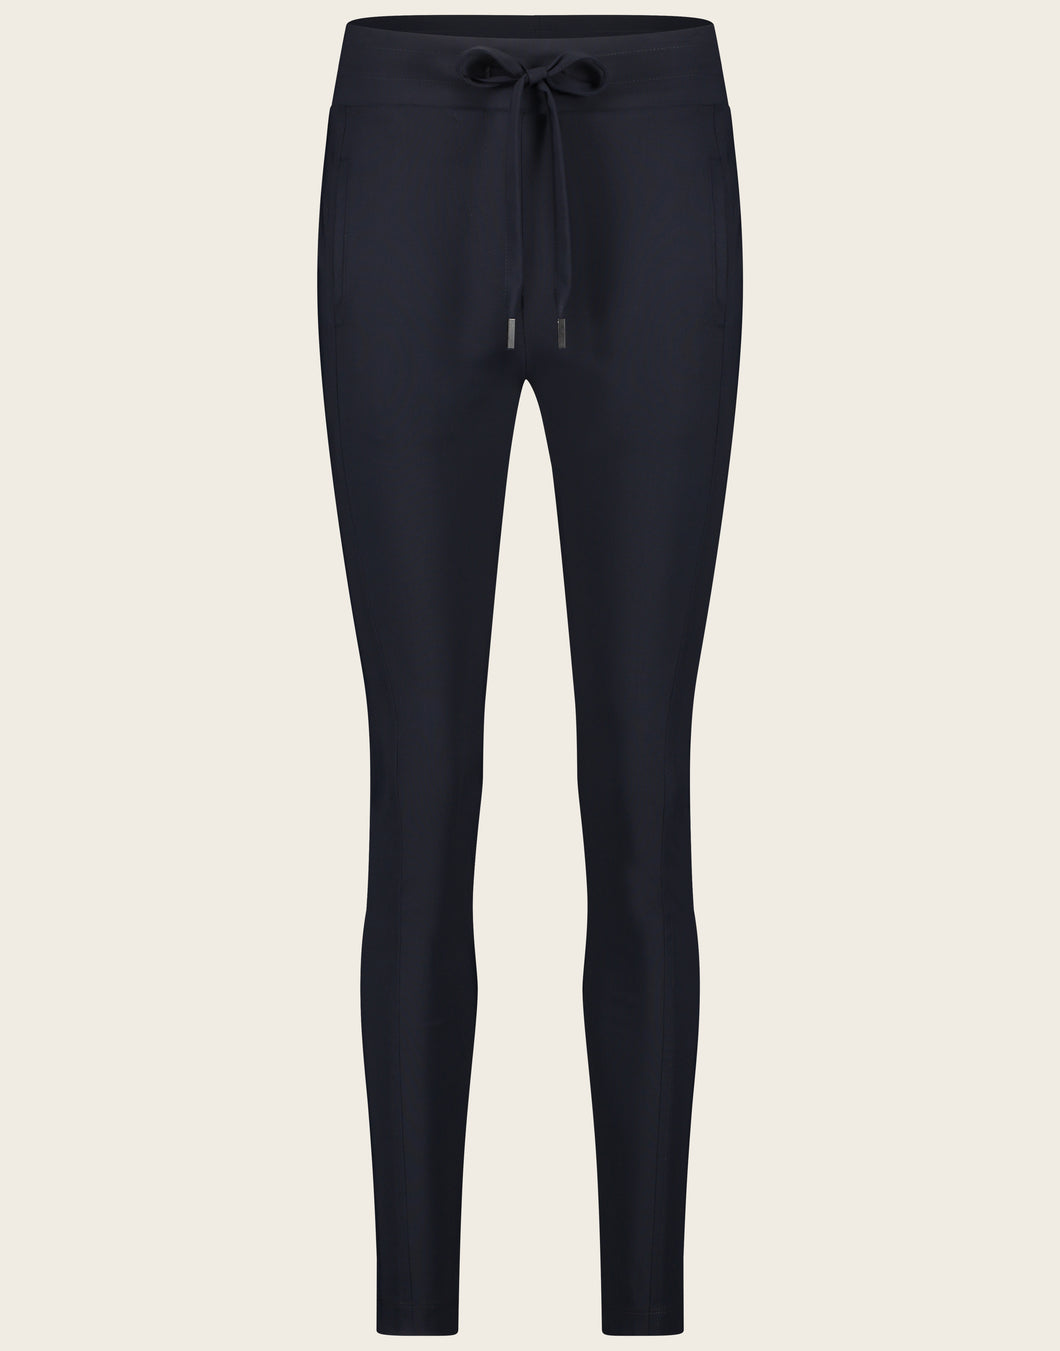 De broek Anna Skinny Fit is een mooie tijdloze broek uit de basis collectie van Jane Luskha. Deze broek is het model skinny fit, heeft een smalle pijp en een tailleband met trekkoord.  De broek is uitgevoerd in de kleur blauw en is van de bekende travel kwaliteit.